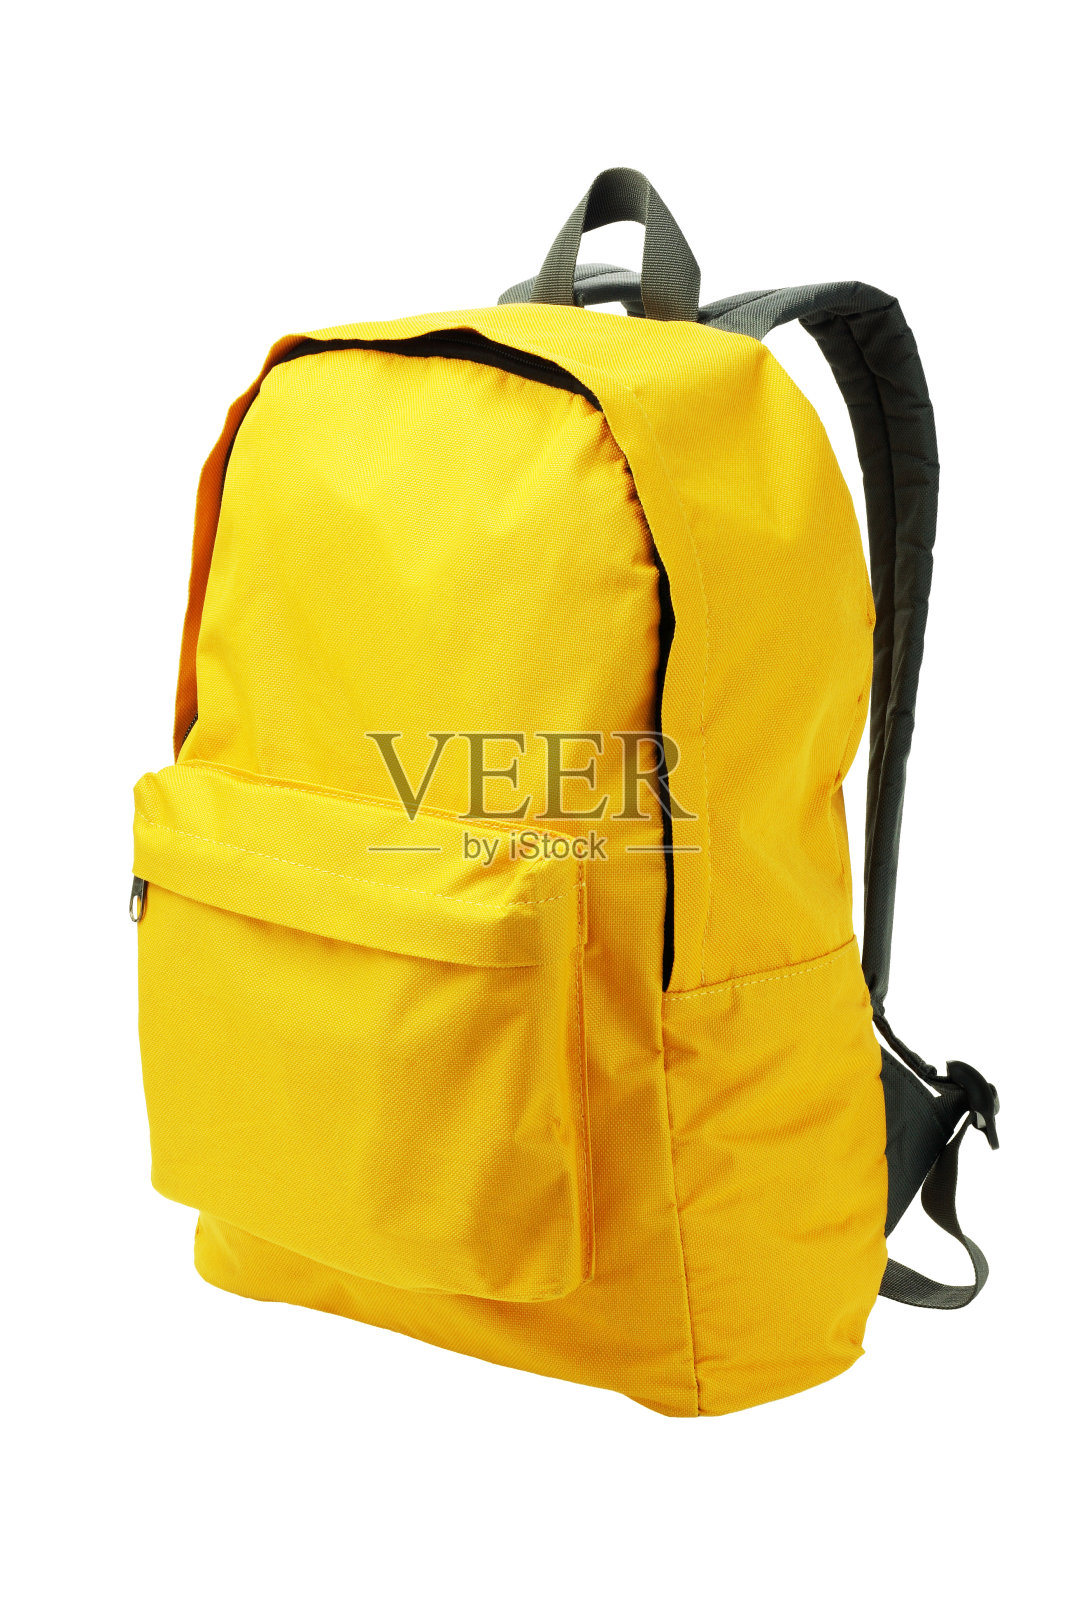 一个亮黄色的背包和白色的背包照片摄影图片